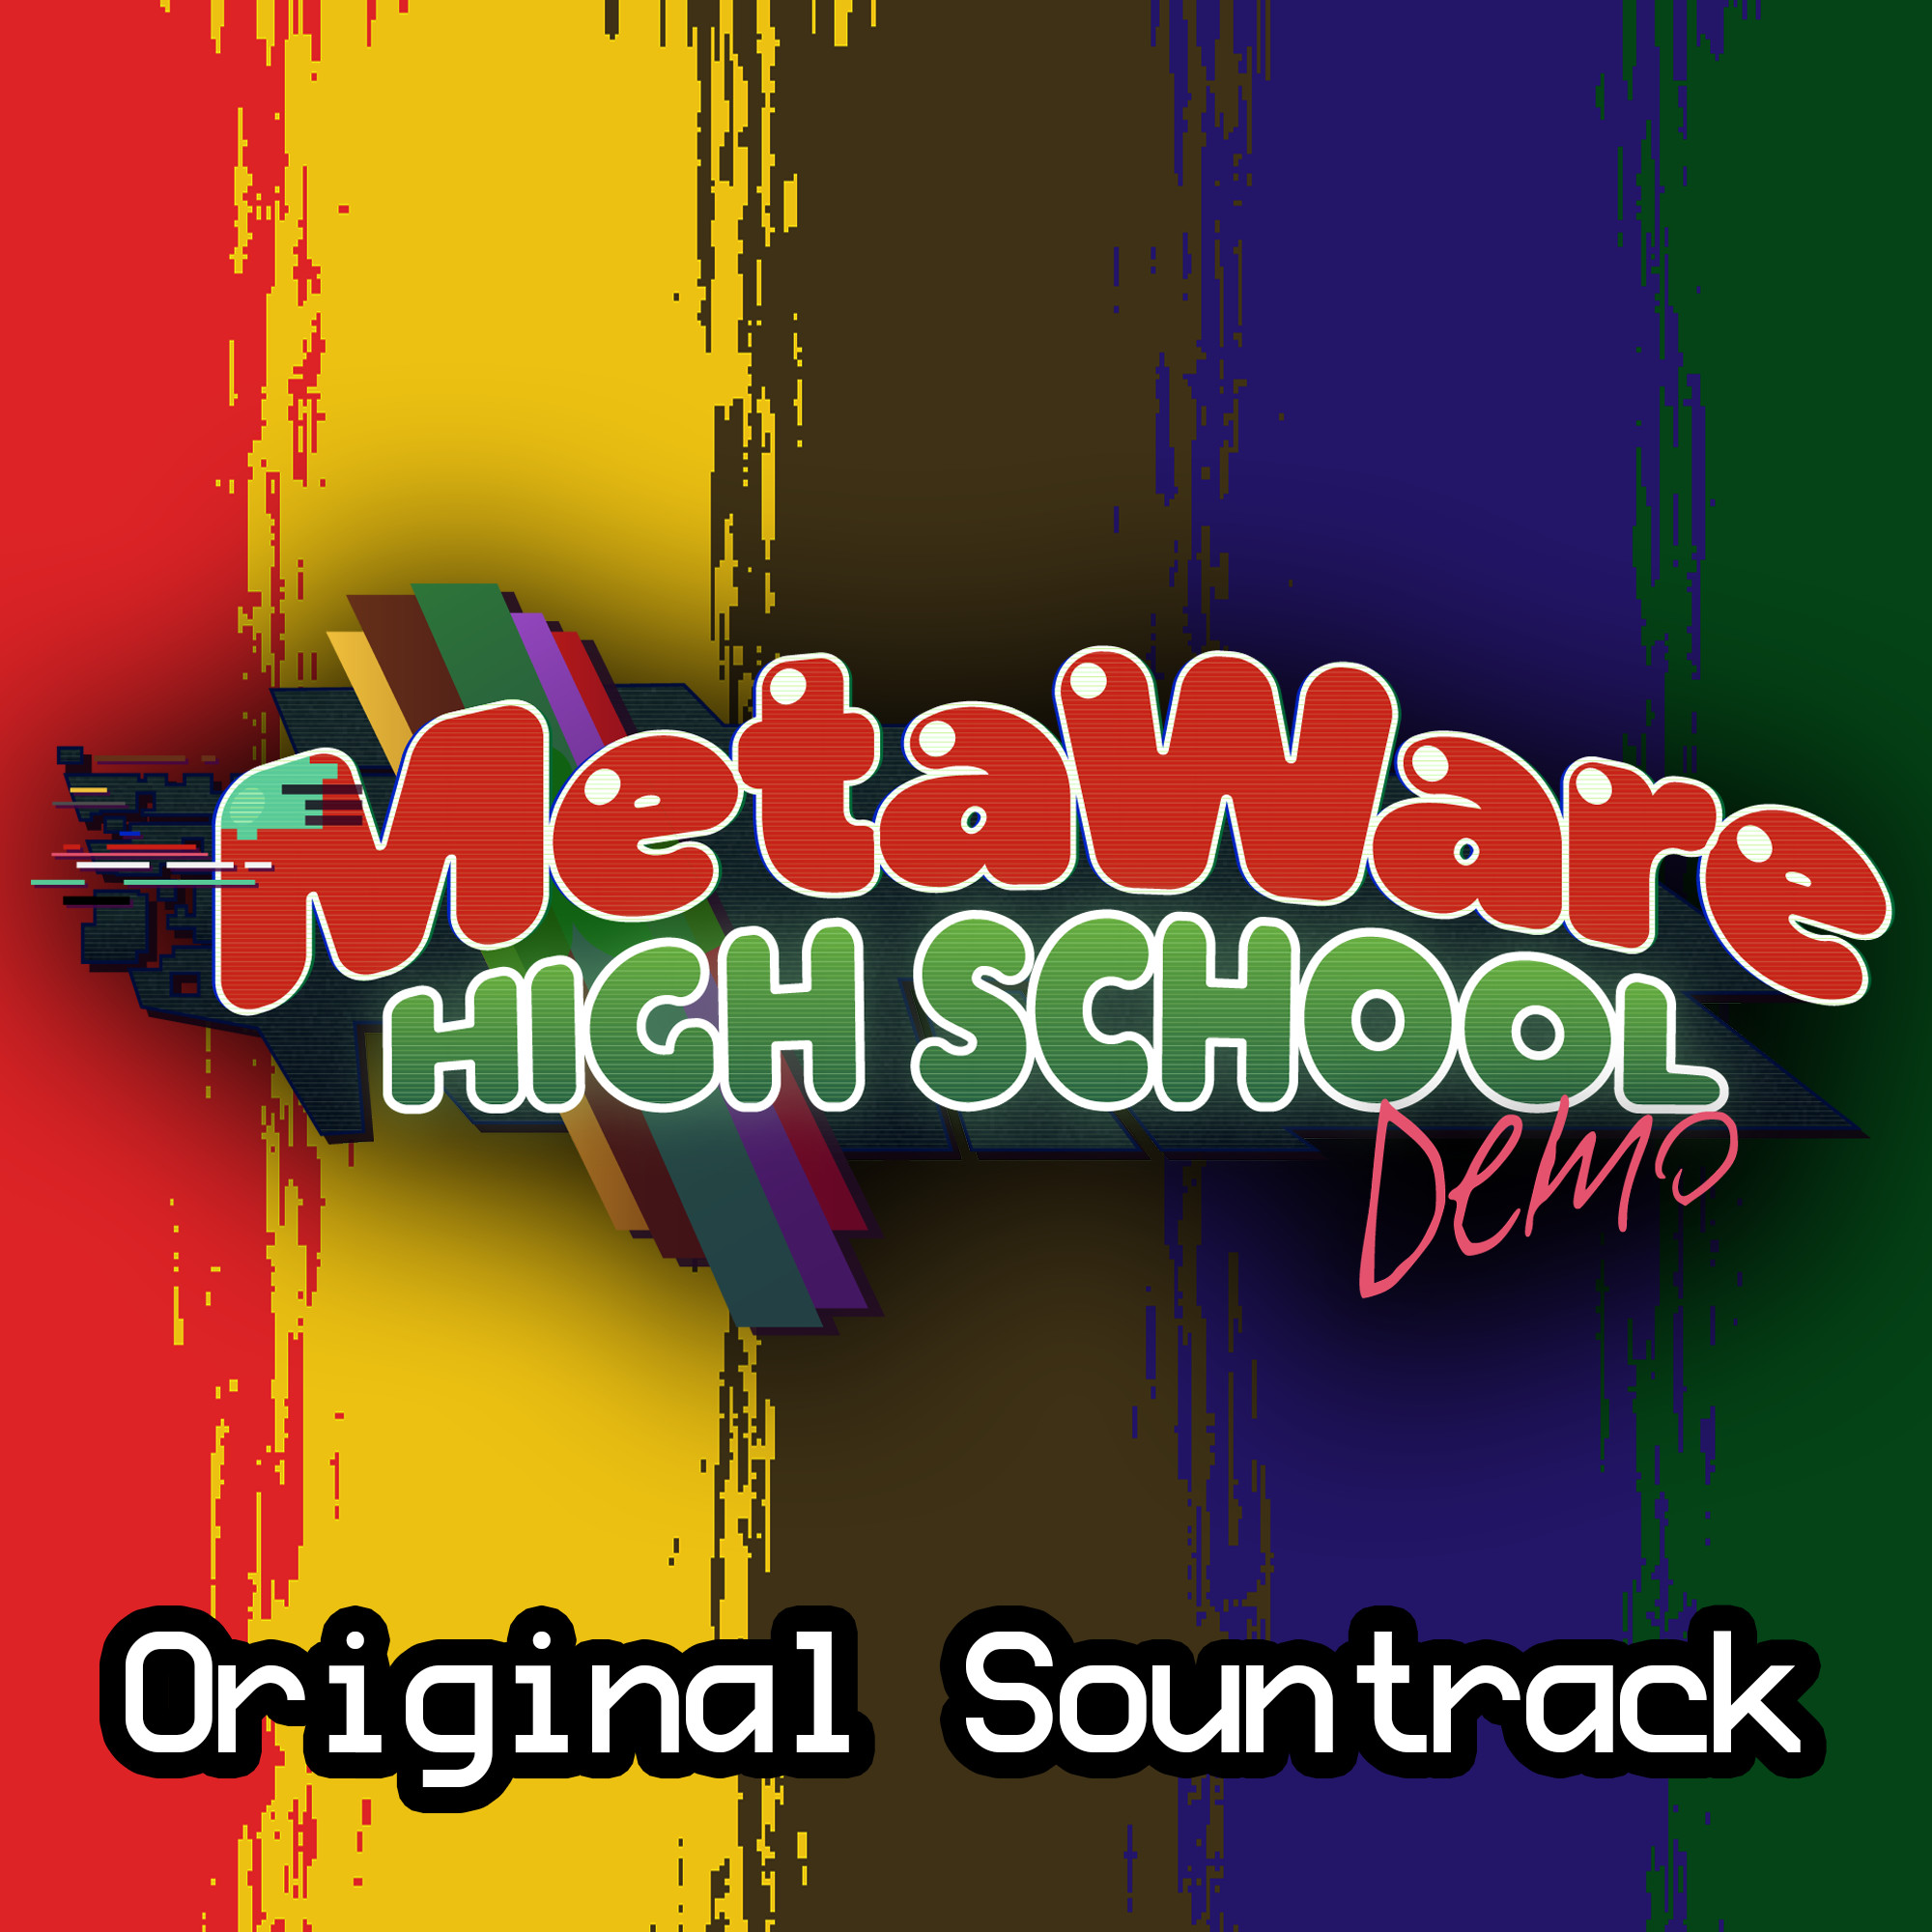 MetaWare High School (Demo) Soundtrack screenshot